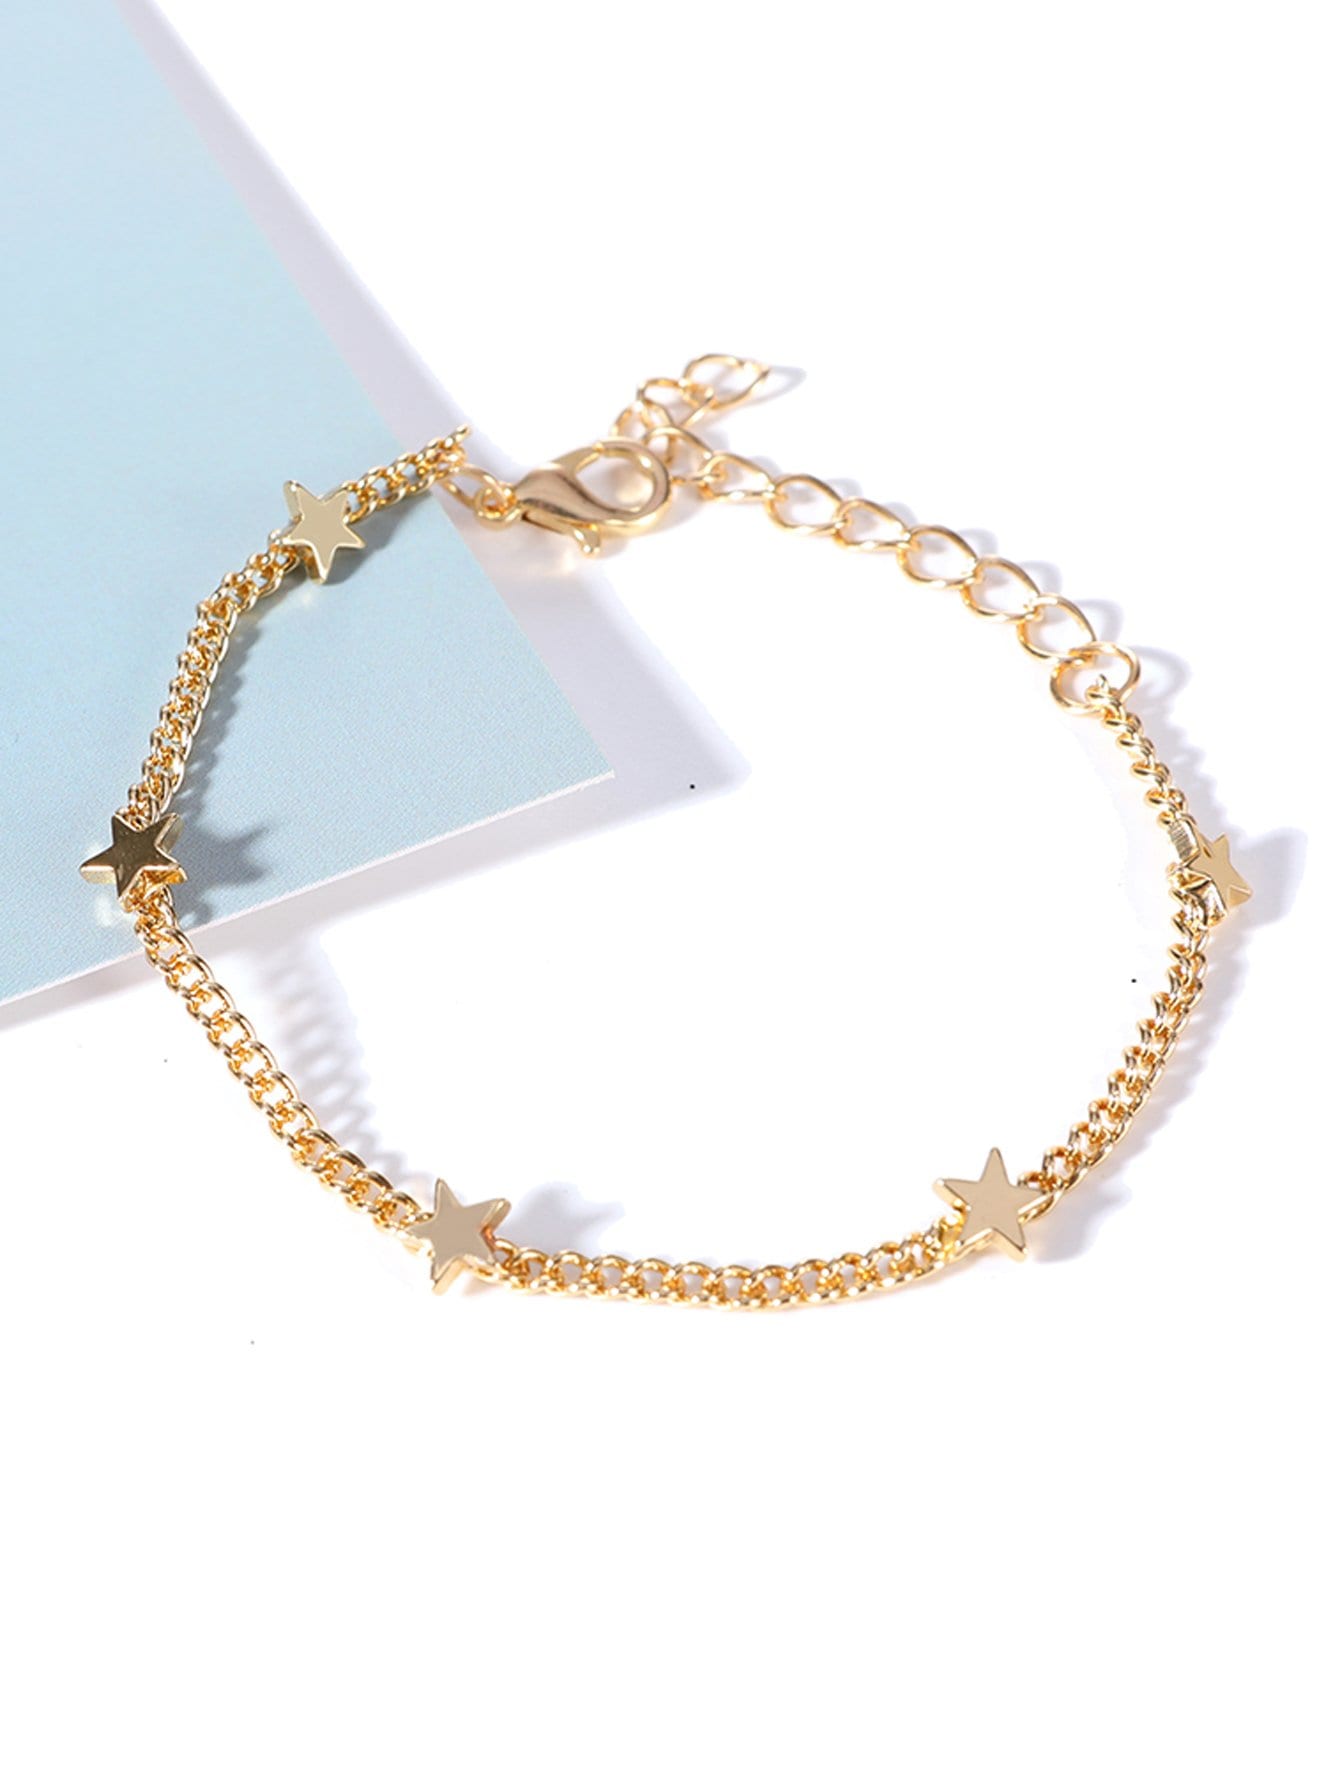 Star Charm Chain Bracelet 1pc for Women Girls Jewelry Fashion Ac